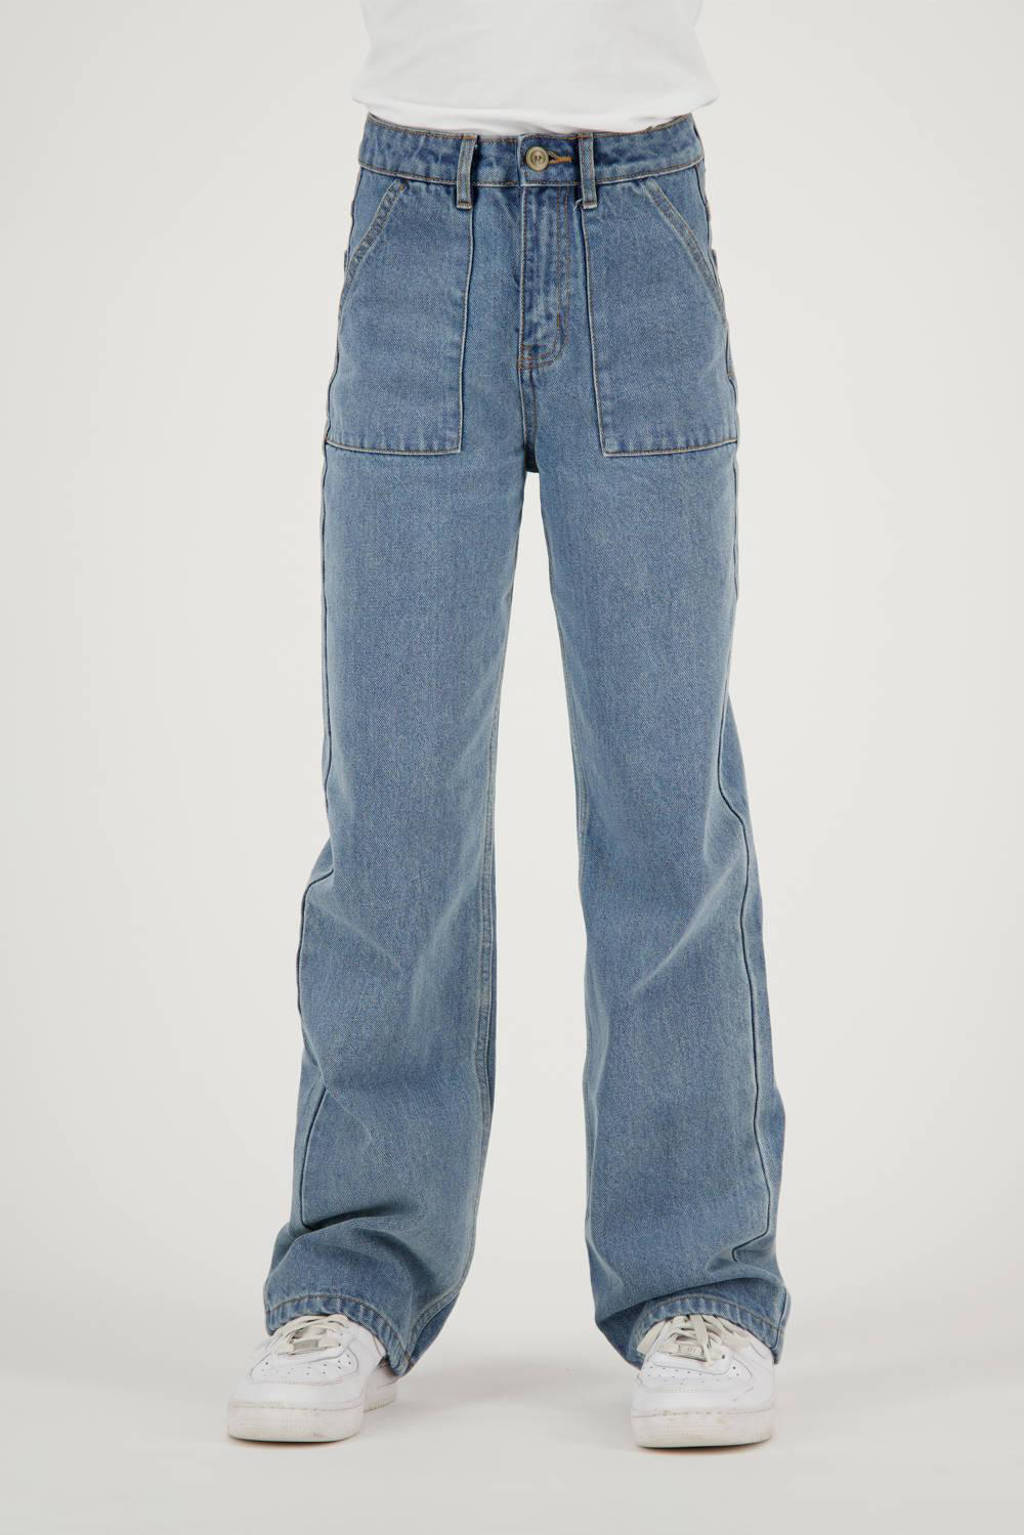 high waist loose fit jeans Mississippi worker vintage blue